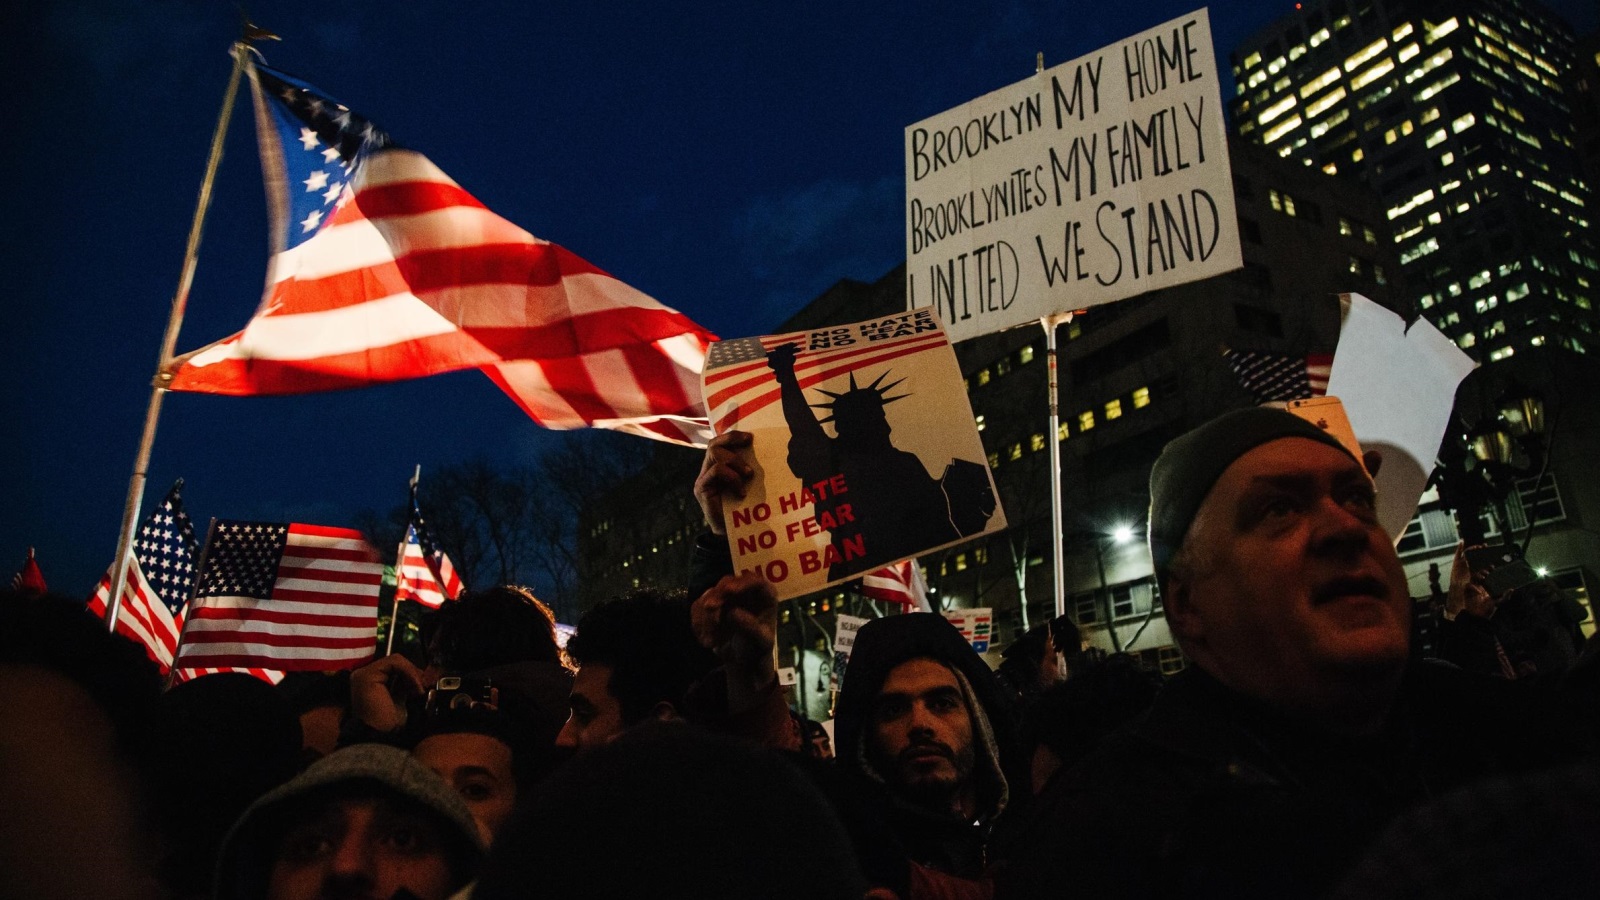 ‪جانب من مظاهرة منددة بسياسات ترمب في بروكلين بنيويورك‬ (الأوروبية)